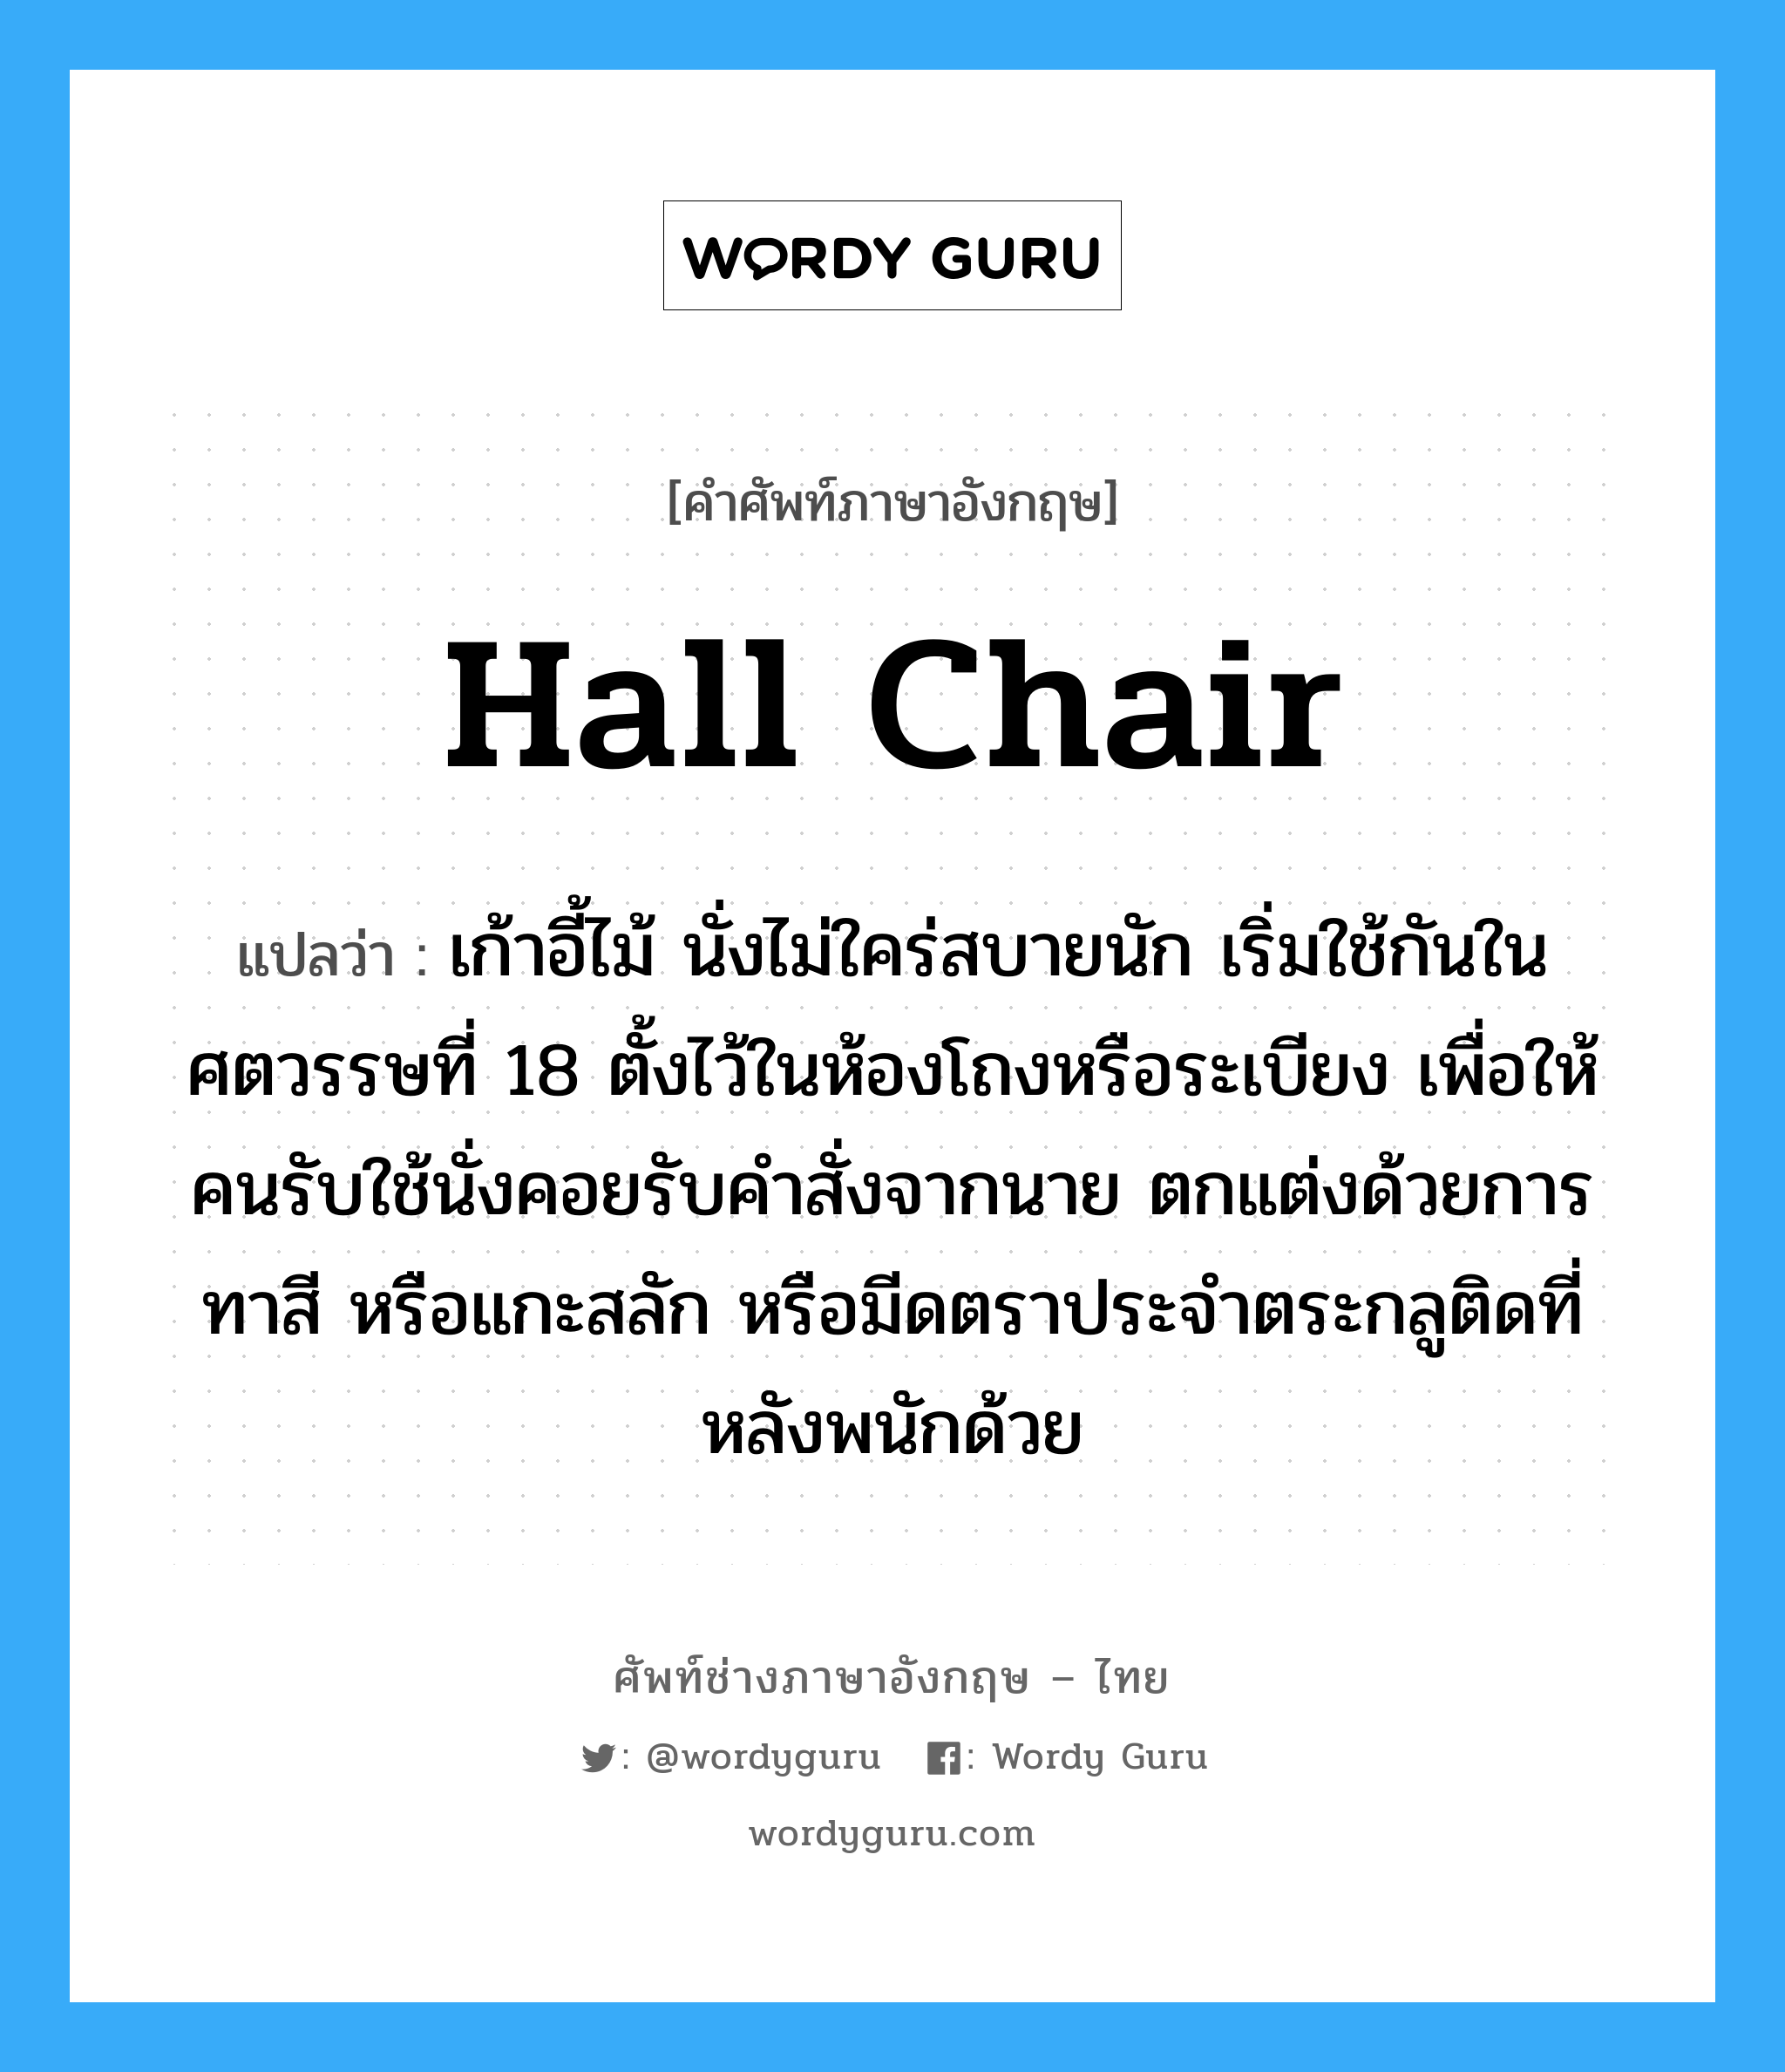 hall chair แปลว่า?, คำศัพท์ช่างภาษาอังกฤษ - ไทย hall chair คำศัพท์ภาษาอังกฤษ hall chair แปลว่า เก้าอี้ไม้ นั่งไม่ใคร่สบายนัก เริ่มใช้กันในศตวรรษที่ 18 ตั้งไว้ในห้องโถงหรือระเบียง เพื่อให้คนรับใช้นั่งคอยรับคำสั่งจากนาย ตกแต่งด้วยการทาสี หรือแกะสลัก หรือมีดตราประจำตระกลูติดที่หลังพนักด้วย